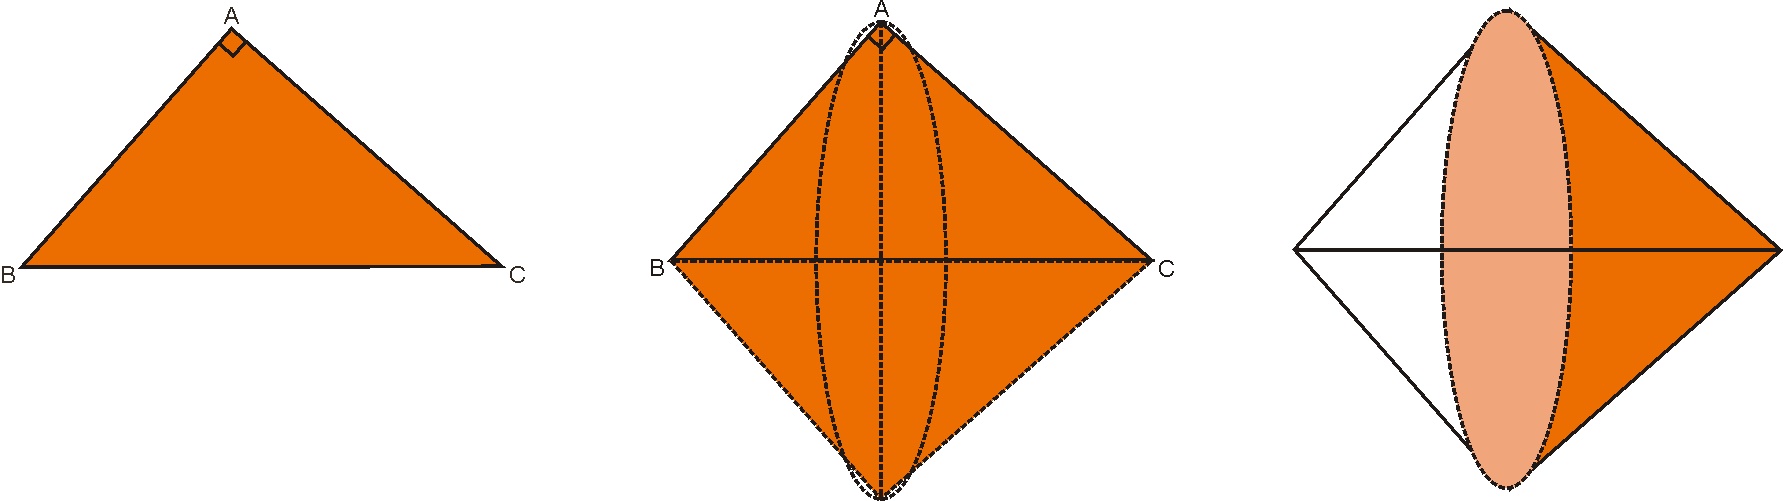 Exemplo 2 A figura mostra o sólido obtido pela rotação completa de um triângulo retângulo ABC em torno da hipotenusa BC.